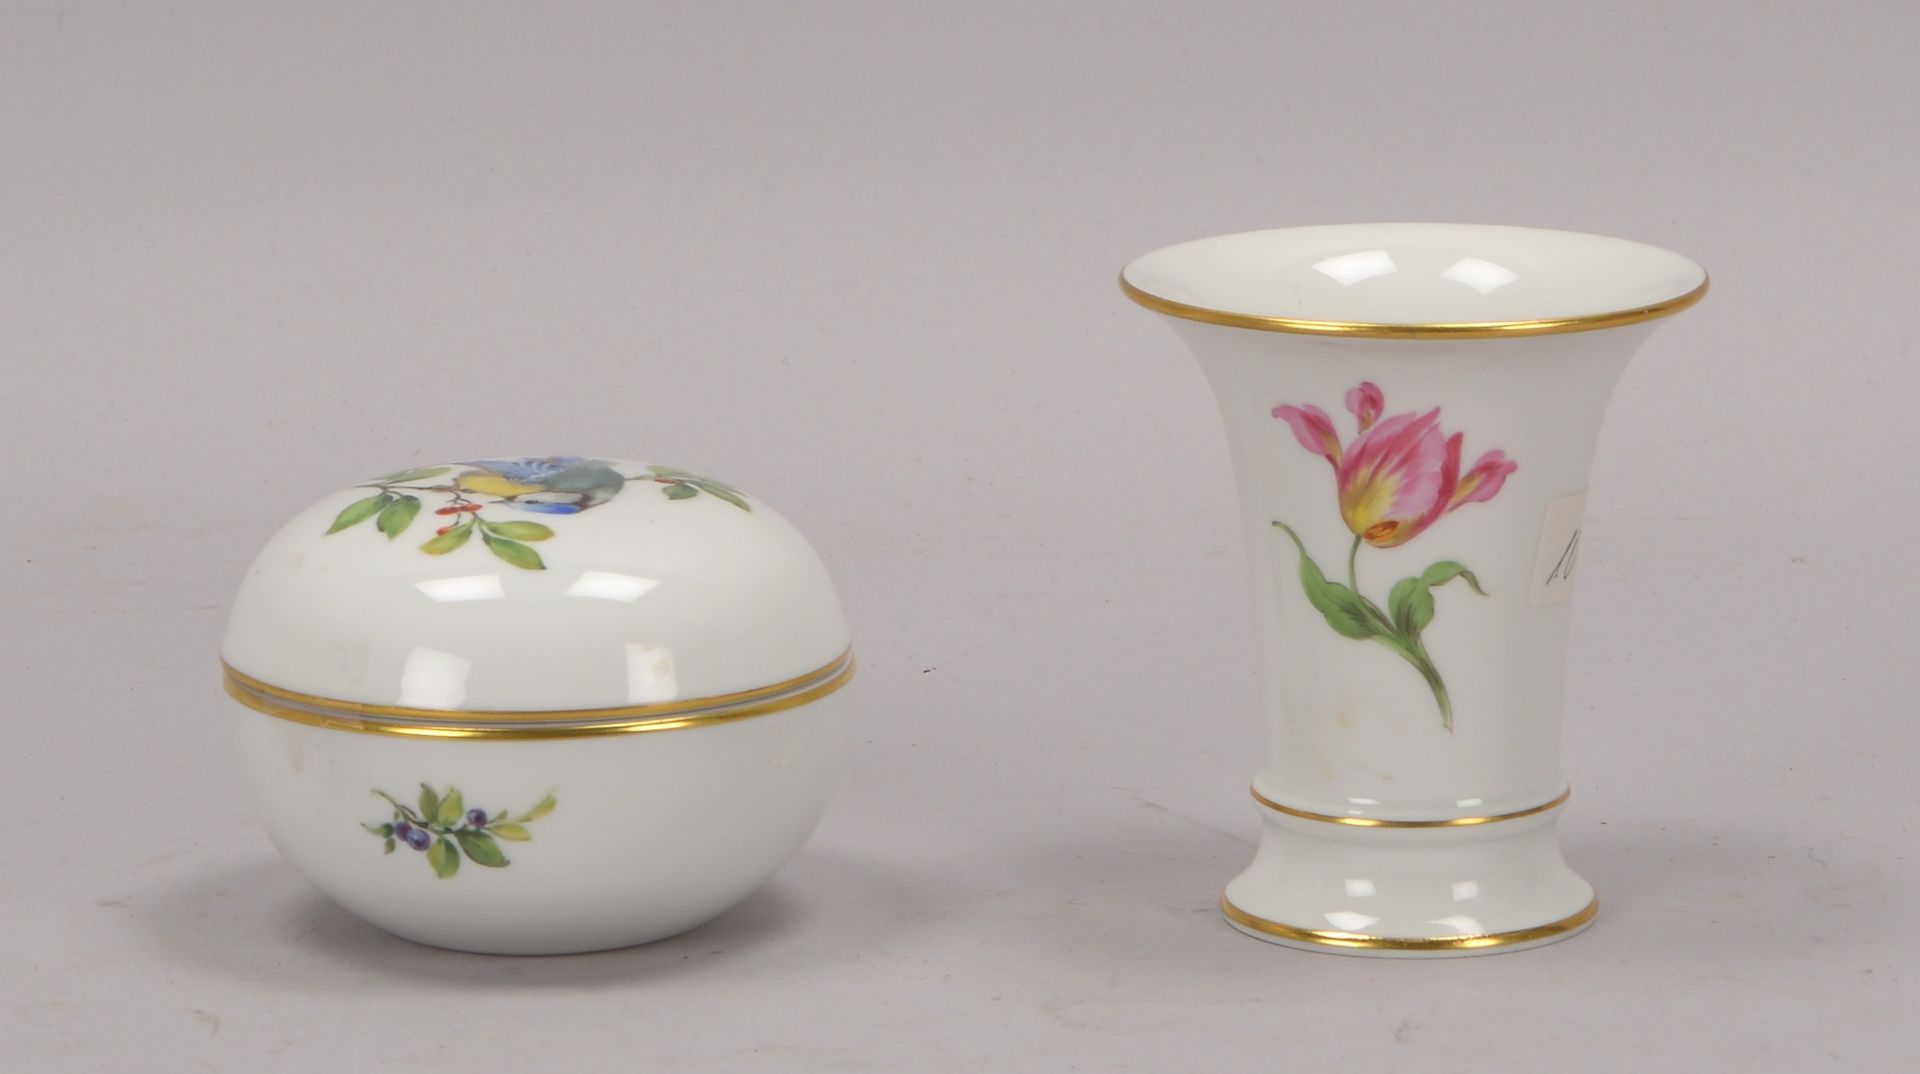 Meissen (I. Wahl), 2 Porzellanteile: 1 Vase, Hoehe 9,5 cm, und 1 Deckeldose, Durchmesser 9 cm